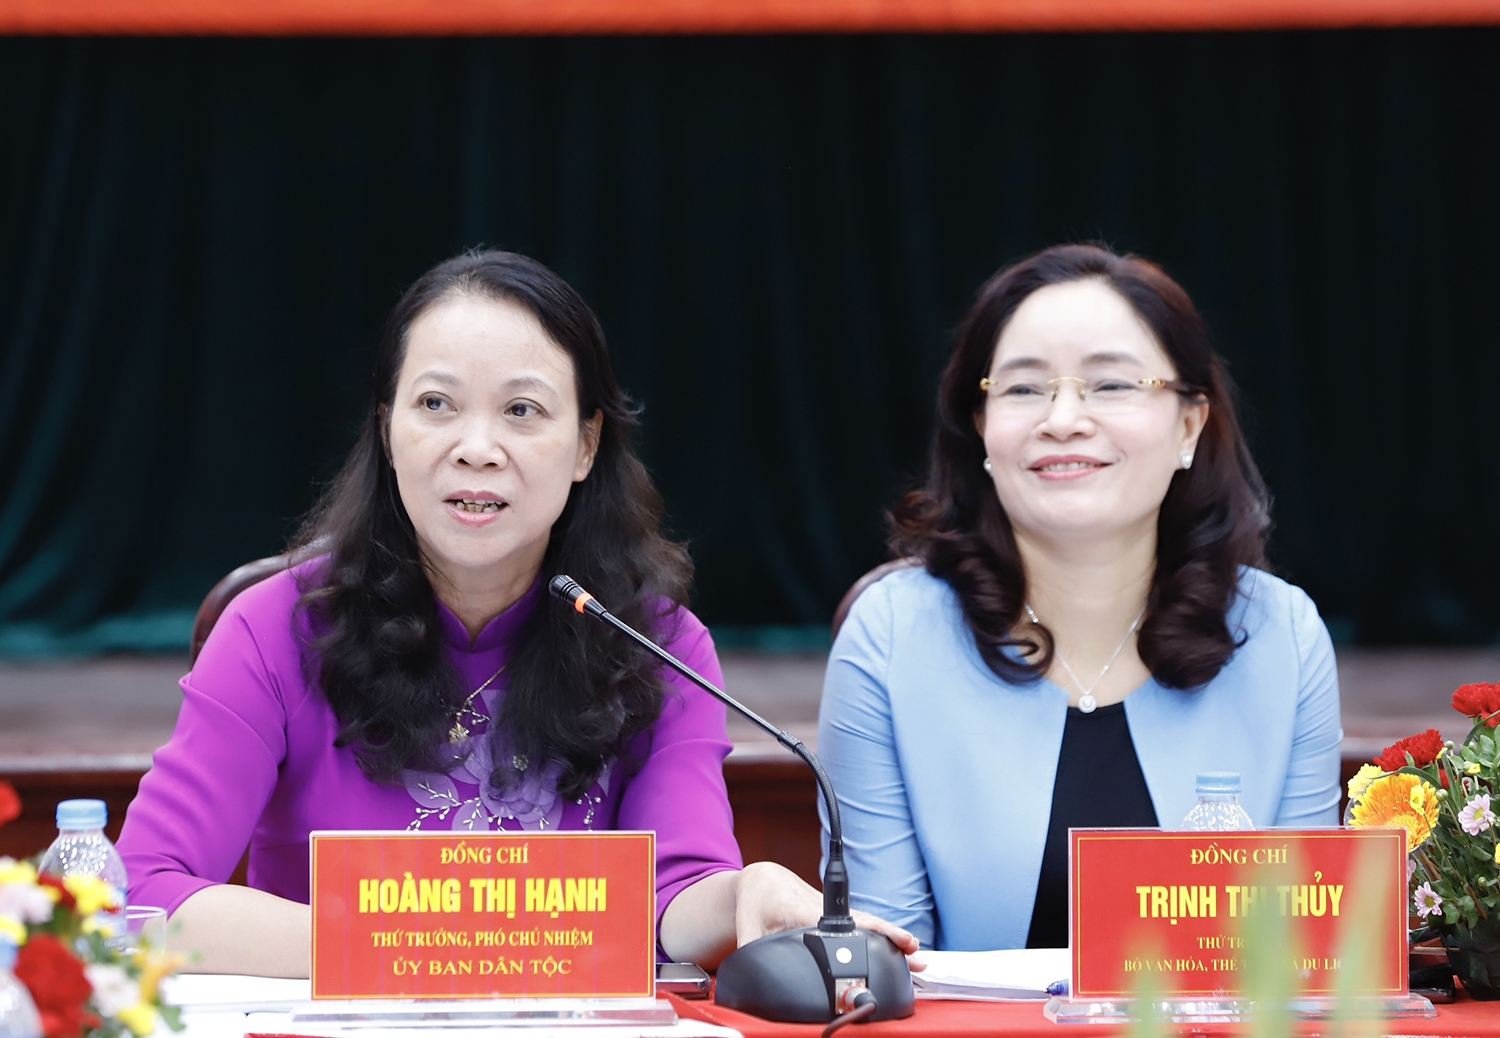 Thứ trưởng, Phó Chủ nhiệm Ủy ban Dân tộc Hoàng Thị Hạnh và Thứ trưởng Bộ VHTT&DL Trịnh Thị Thủy đồng chủ trì Hội nghị 